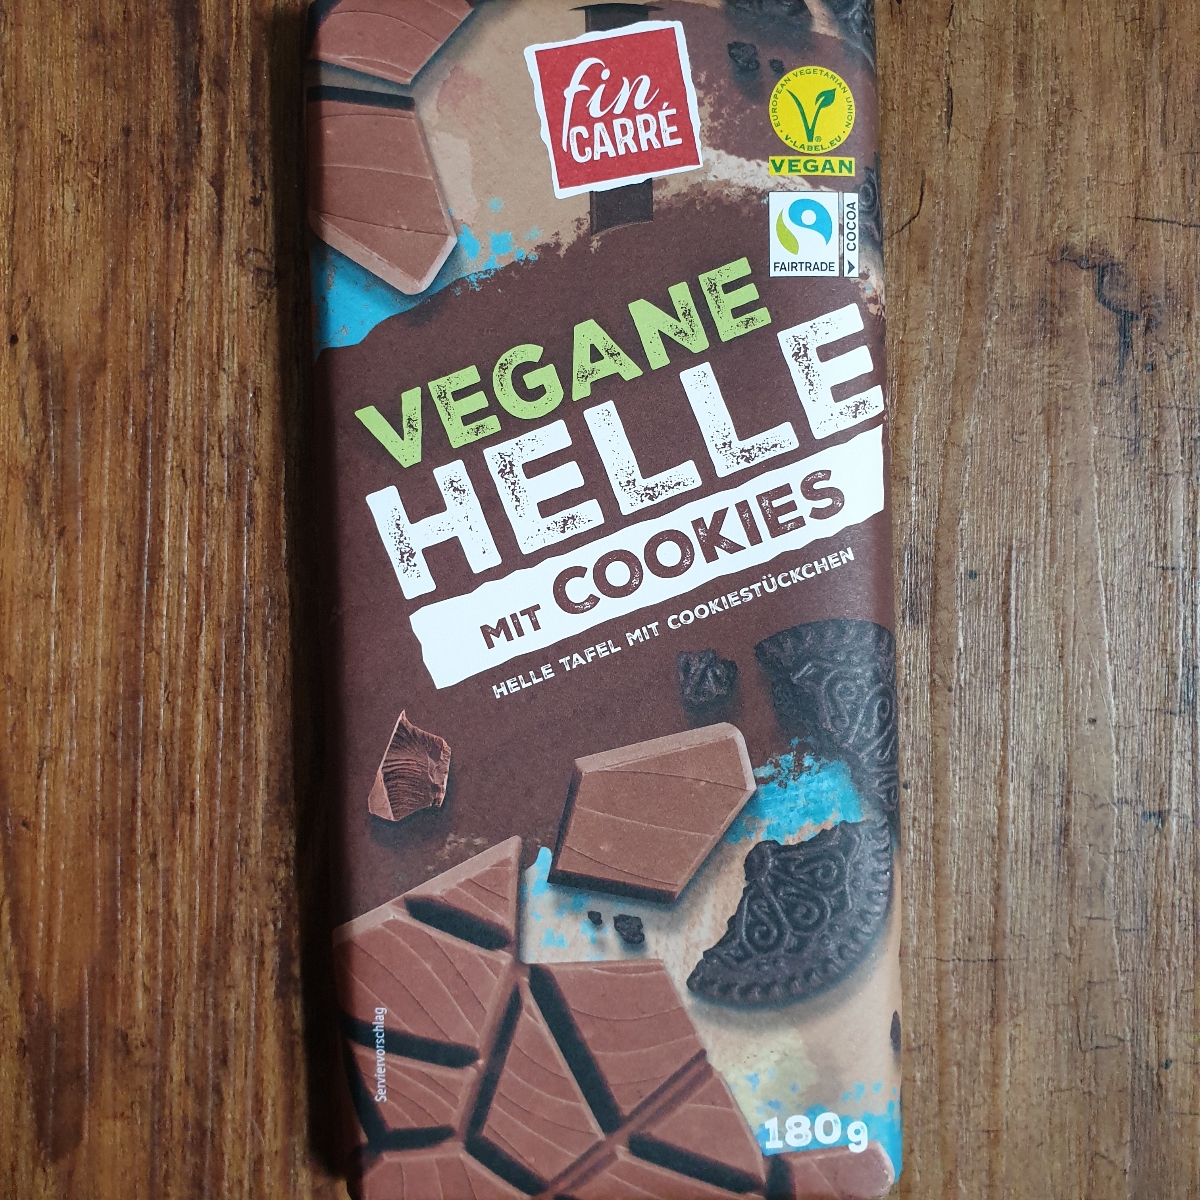 Fin Carré Vegane Helle mit Cookies Review | abillion